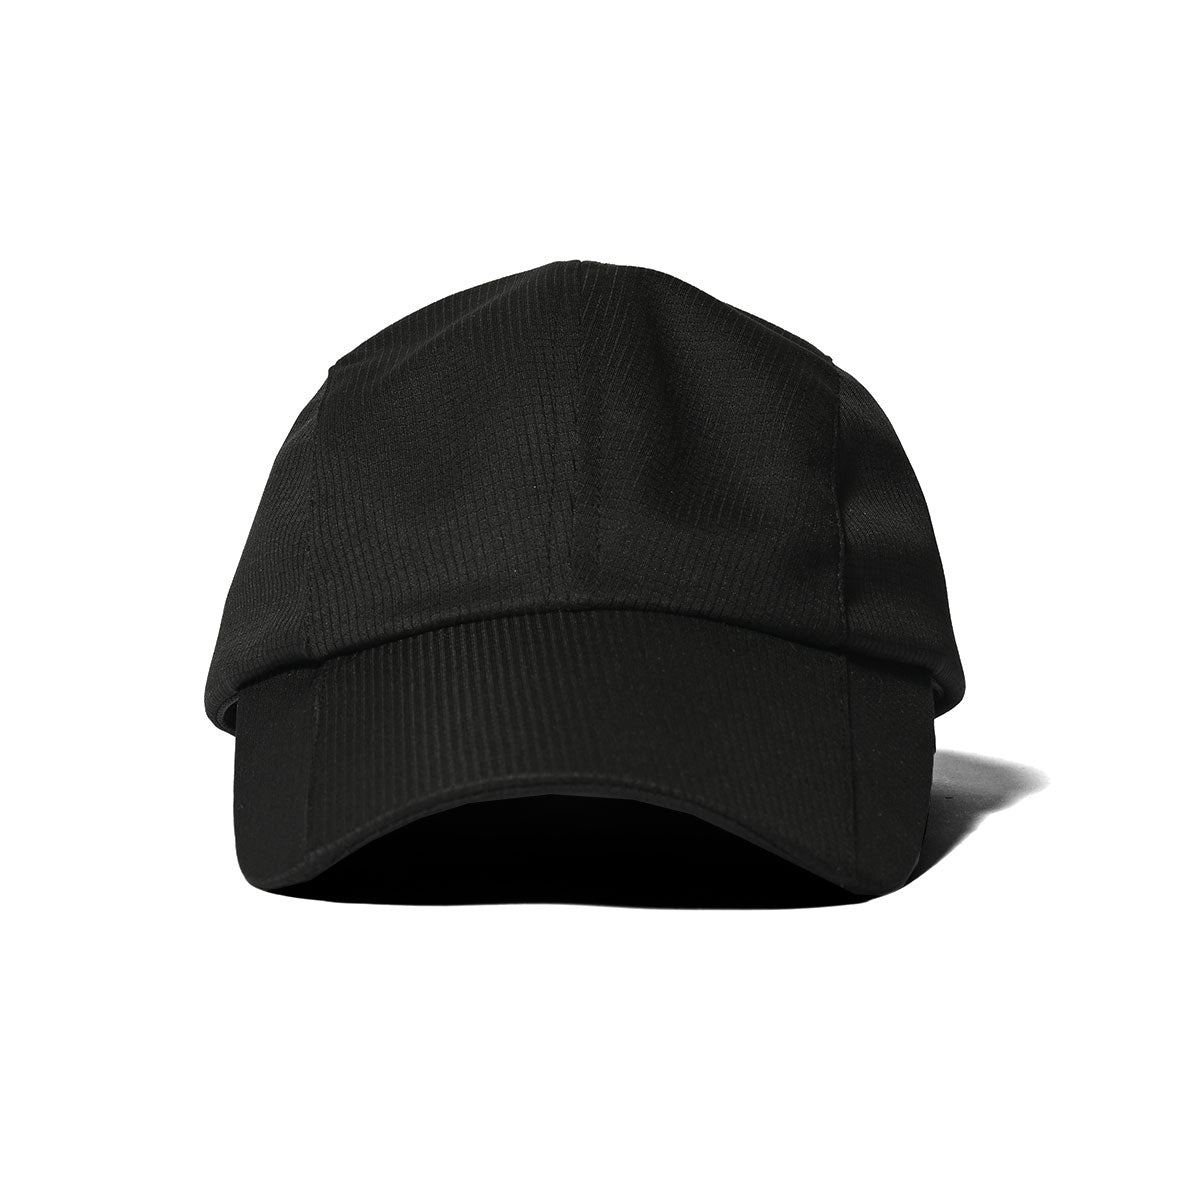 HOMEGAME - SOLID SPORT CAP BLACK【HG241416】